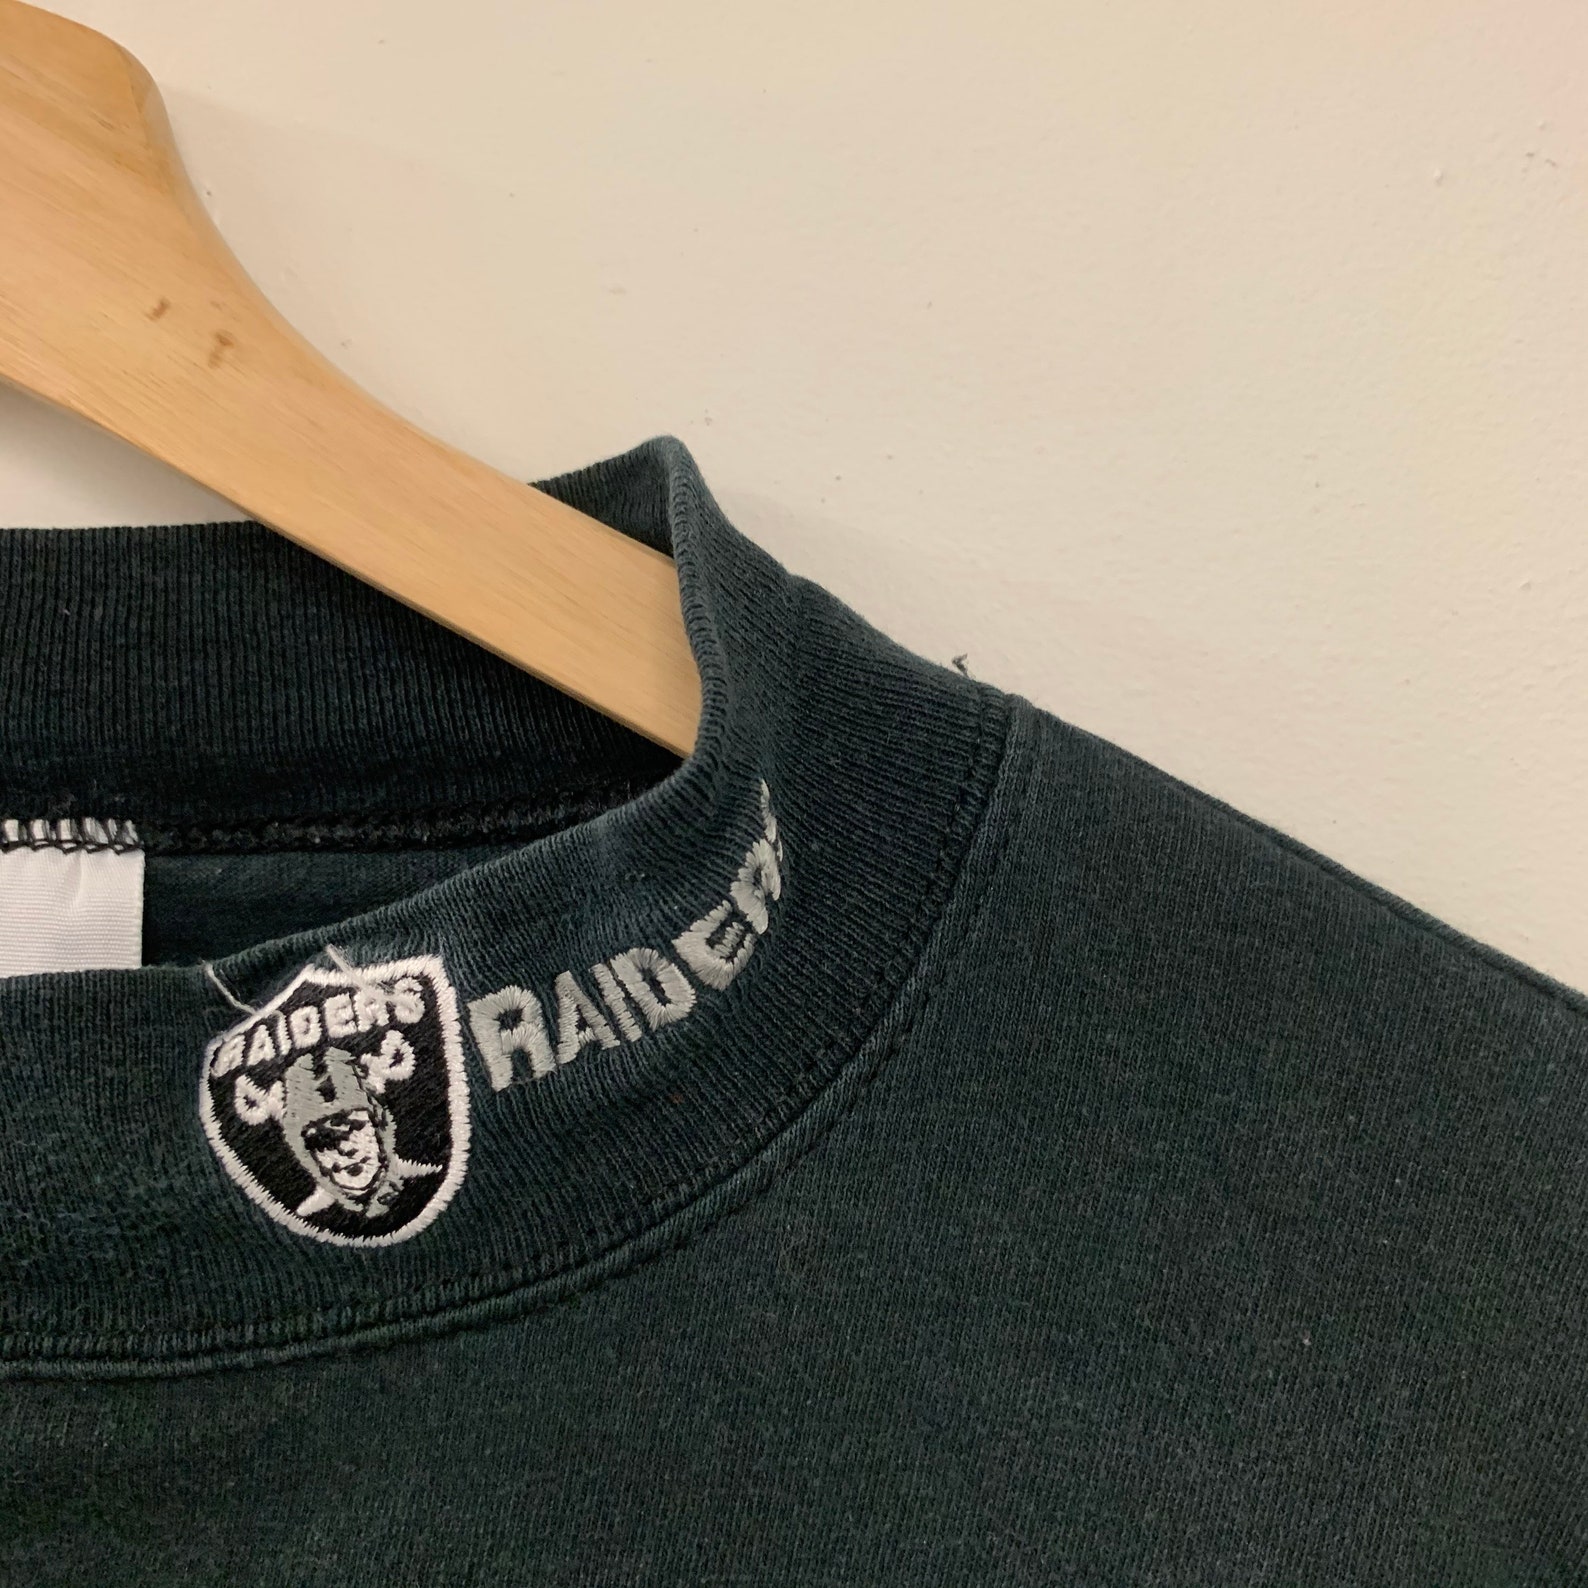 Vintage 90s Oakland Raiders NFL Mock Turtleneck Shirt | Etsy